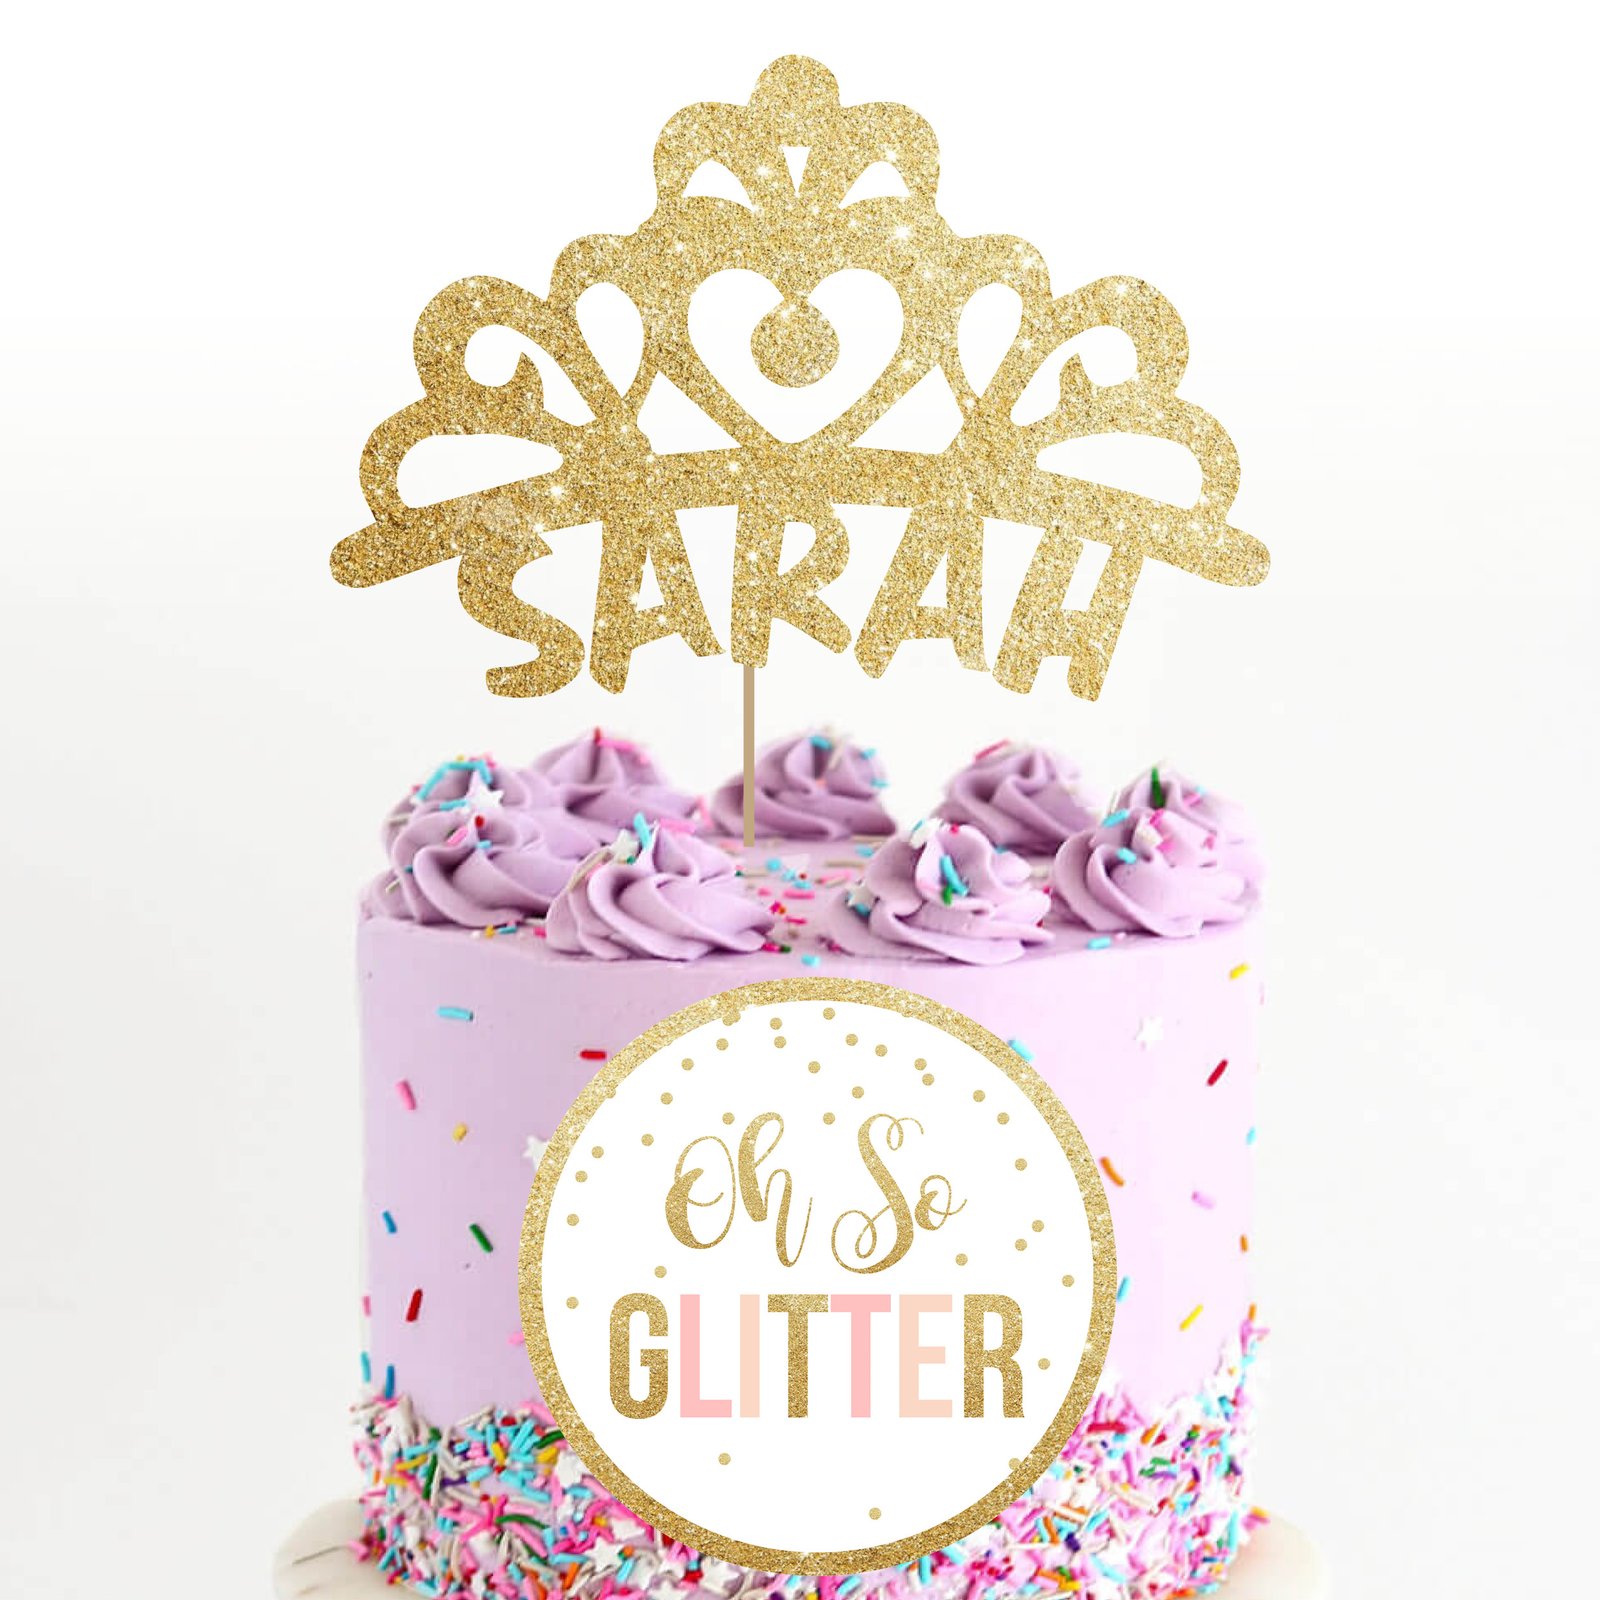 Princess Cake Ideas: How to Make a Princess Tiara Cake Topper - Aaichi  Savali